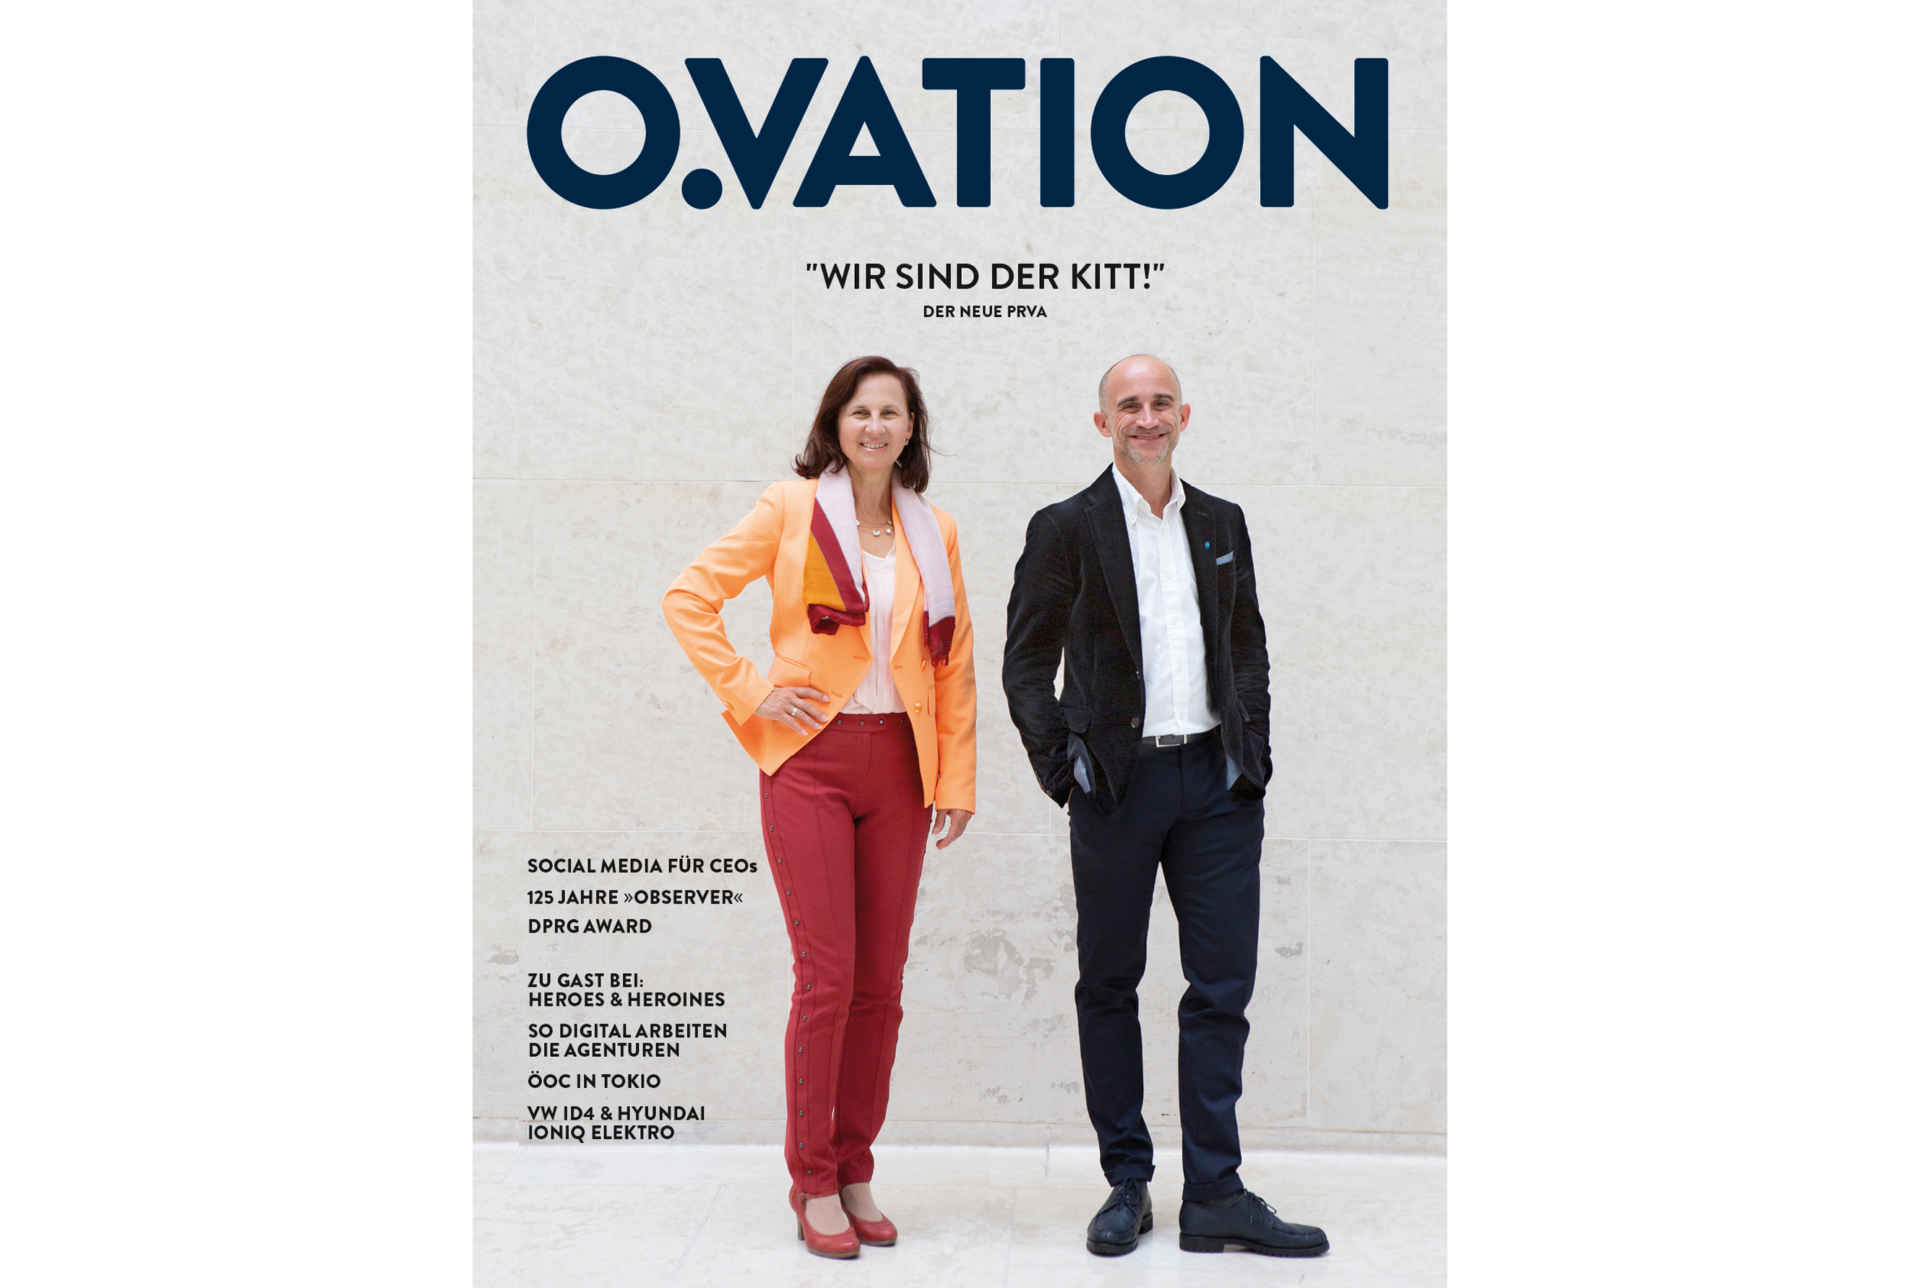 PRVA auf der Titelseite des O.VATION Magazins